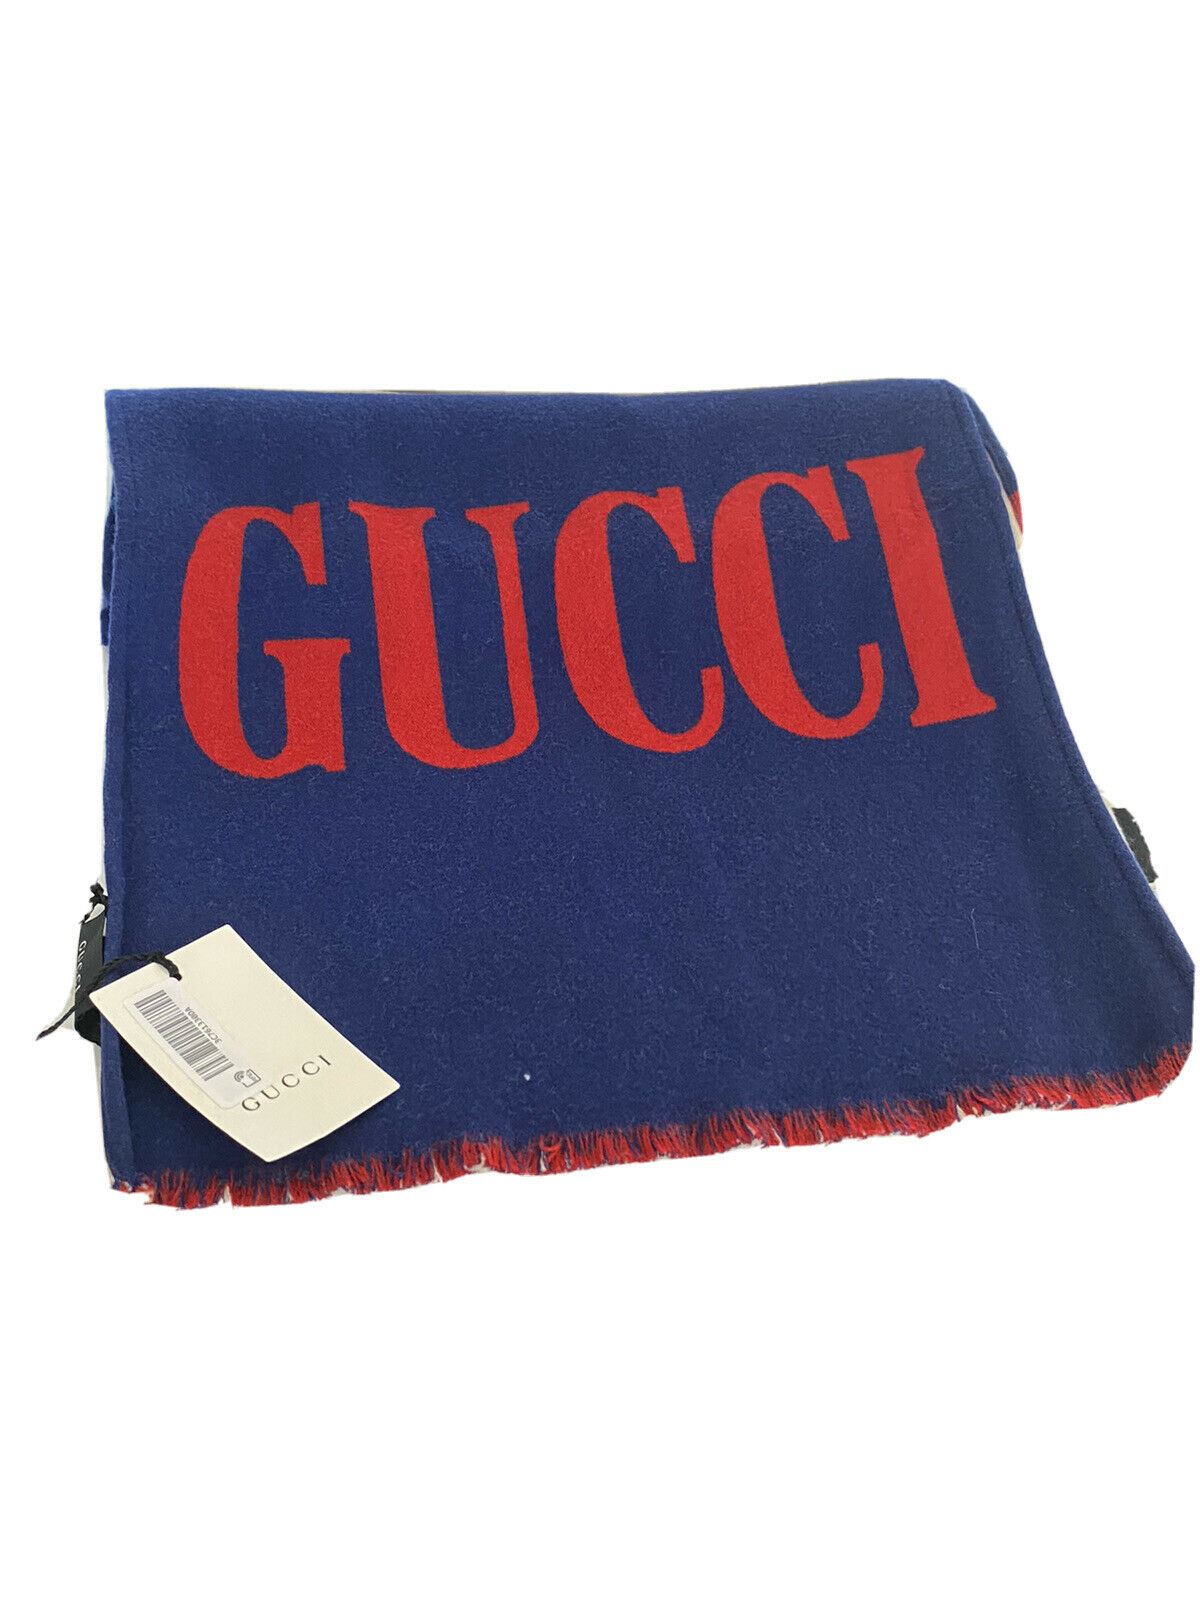 Шарф NWT Gucci Guccium Синий Шерсть/Шелк 525559 35x180 Сделано в Италии 